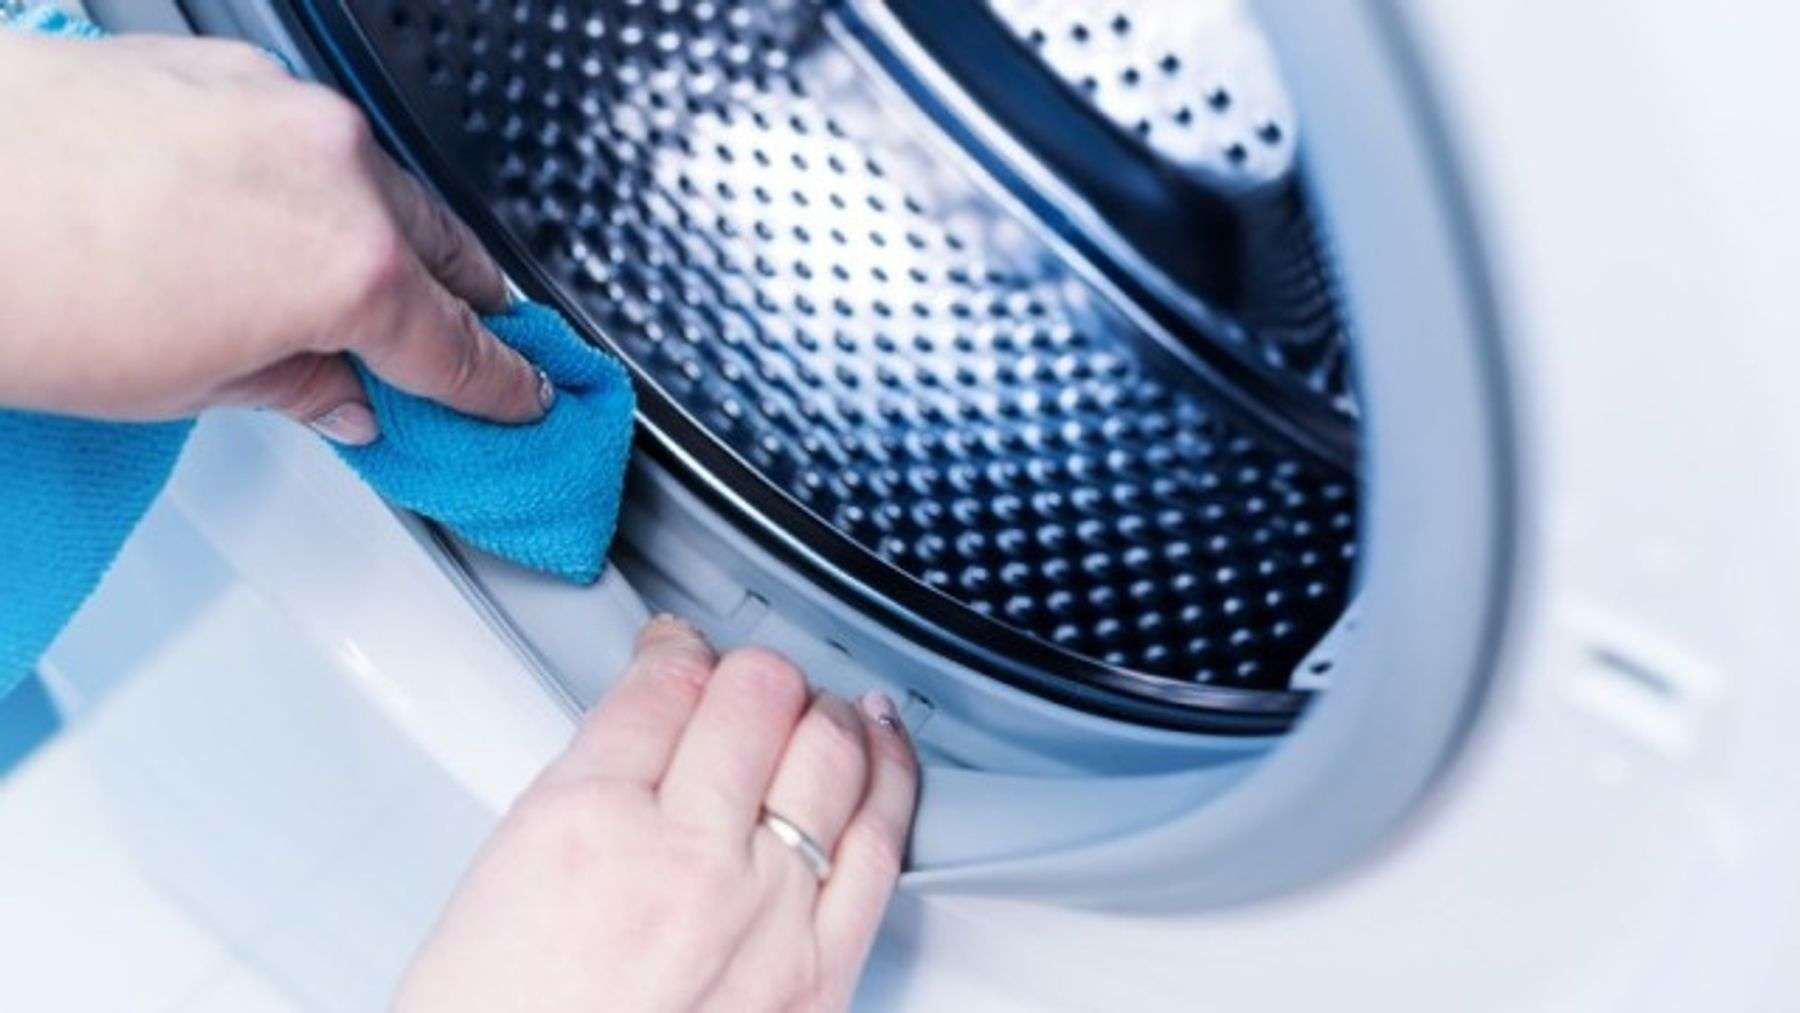 Để giữ cho máy giặt luôn sạch sẽ, bạn cần lưu ý vệ sinh sau khi giặt và mở nắp để máy luôn được thông thoáng